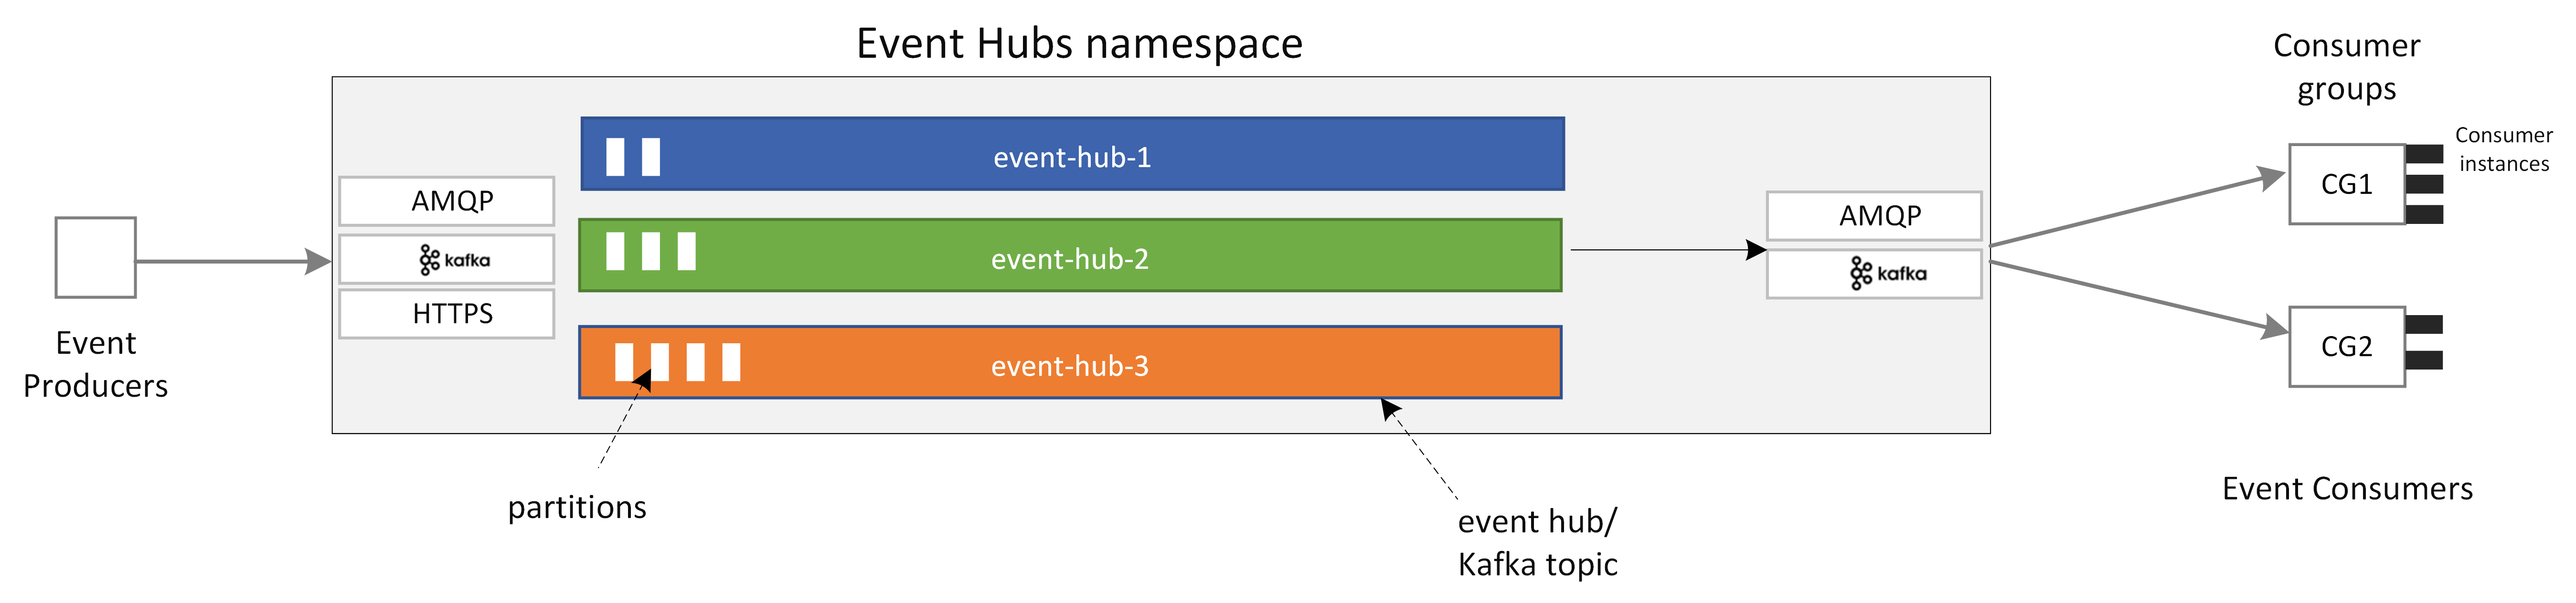 Event Hubs'ın ana bileşenlerini gösteren diyagram.